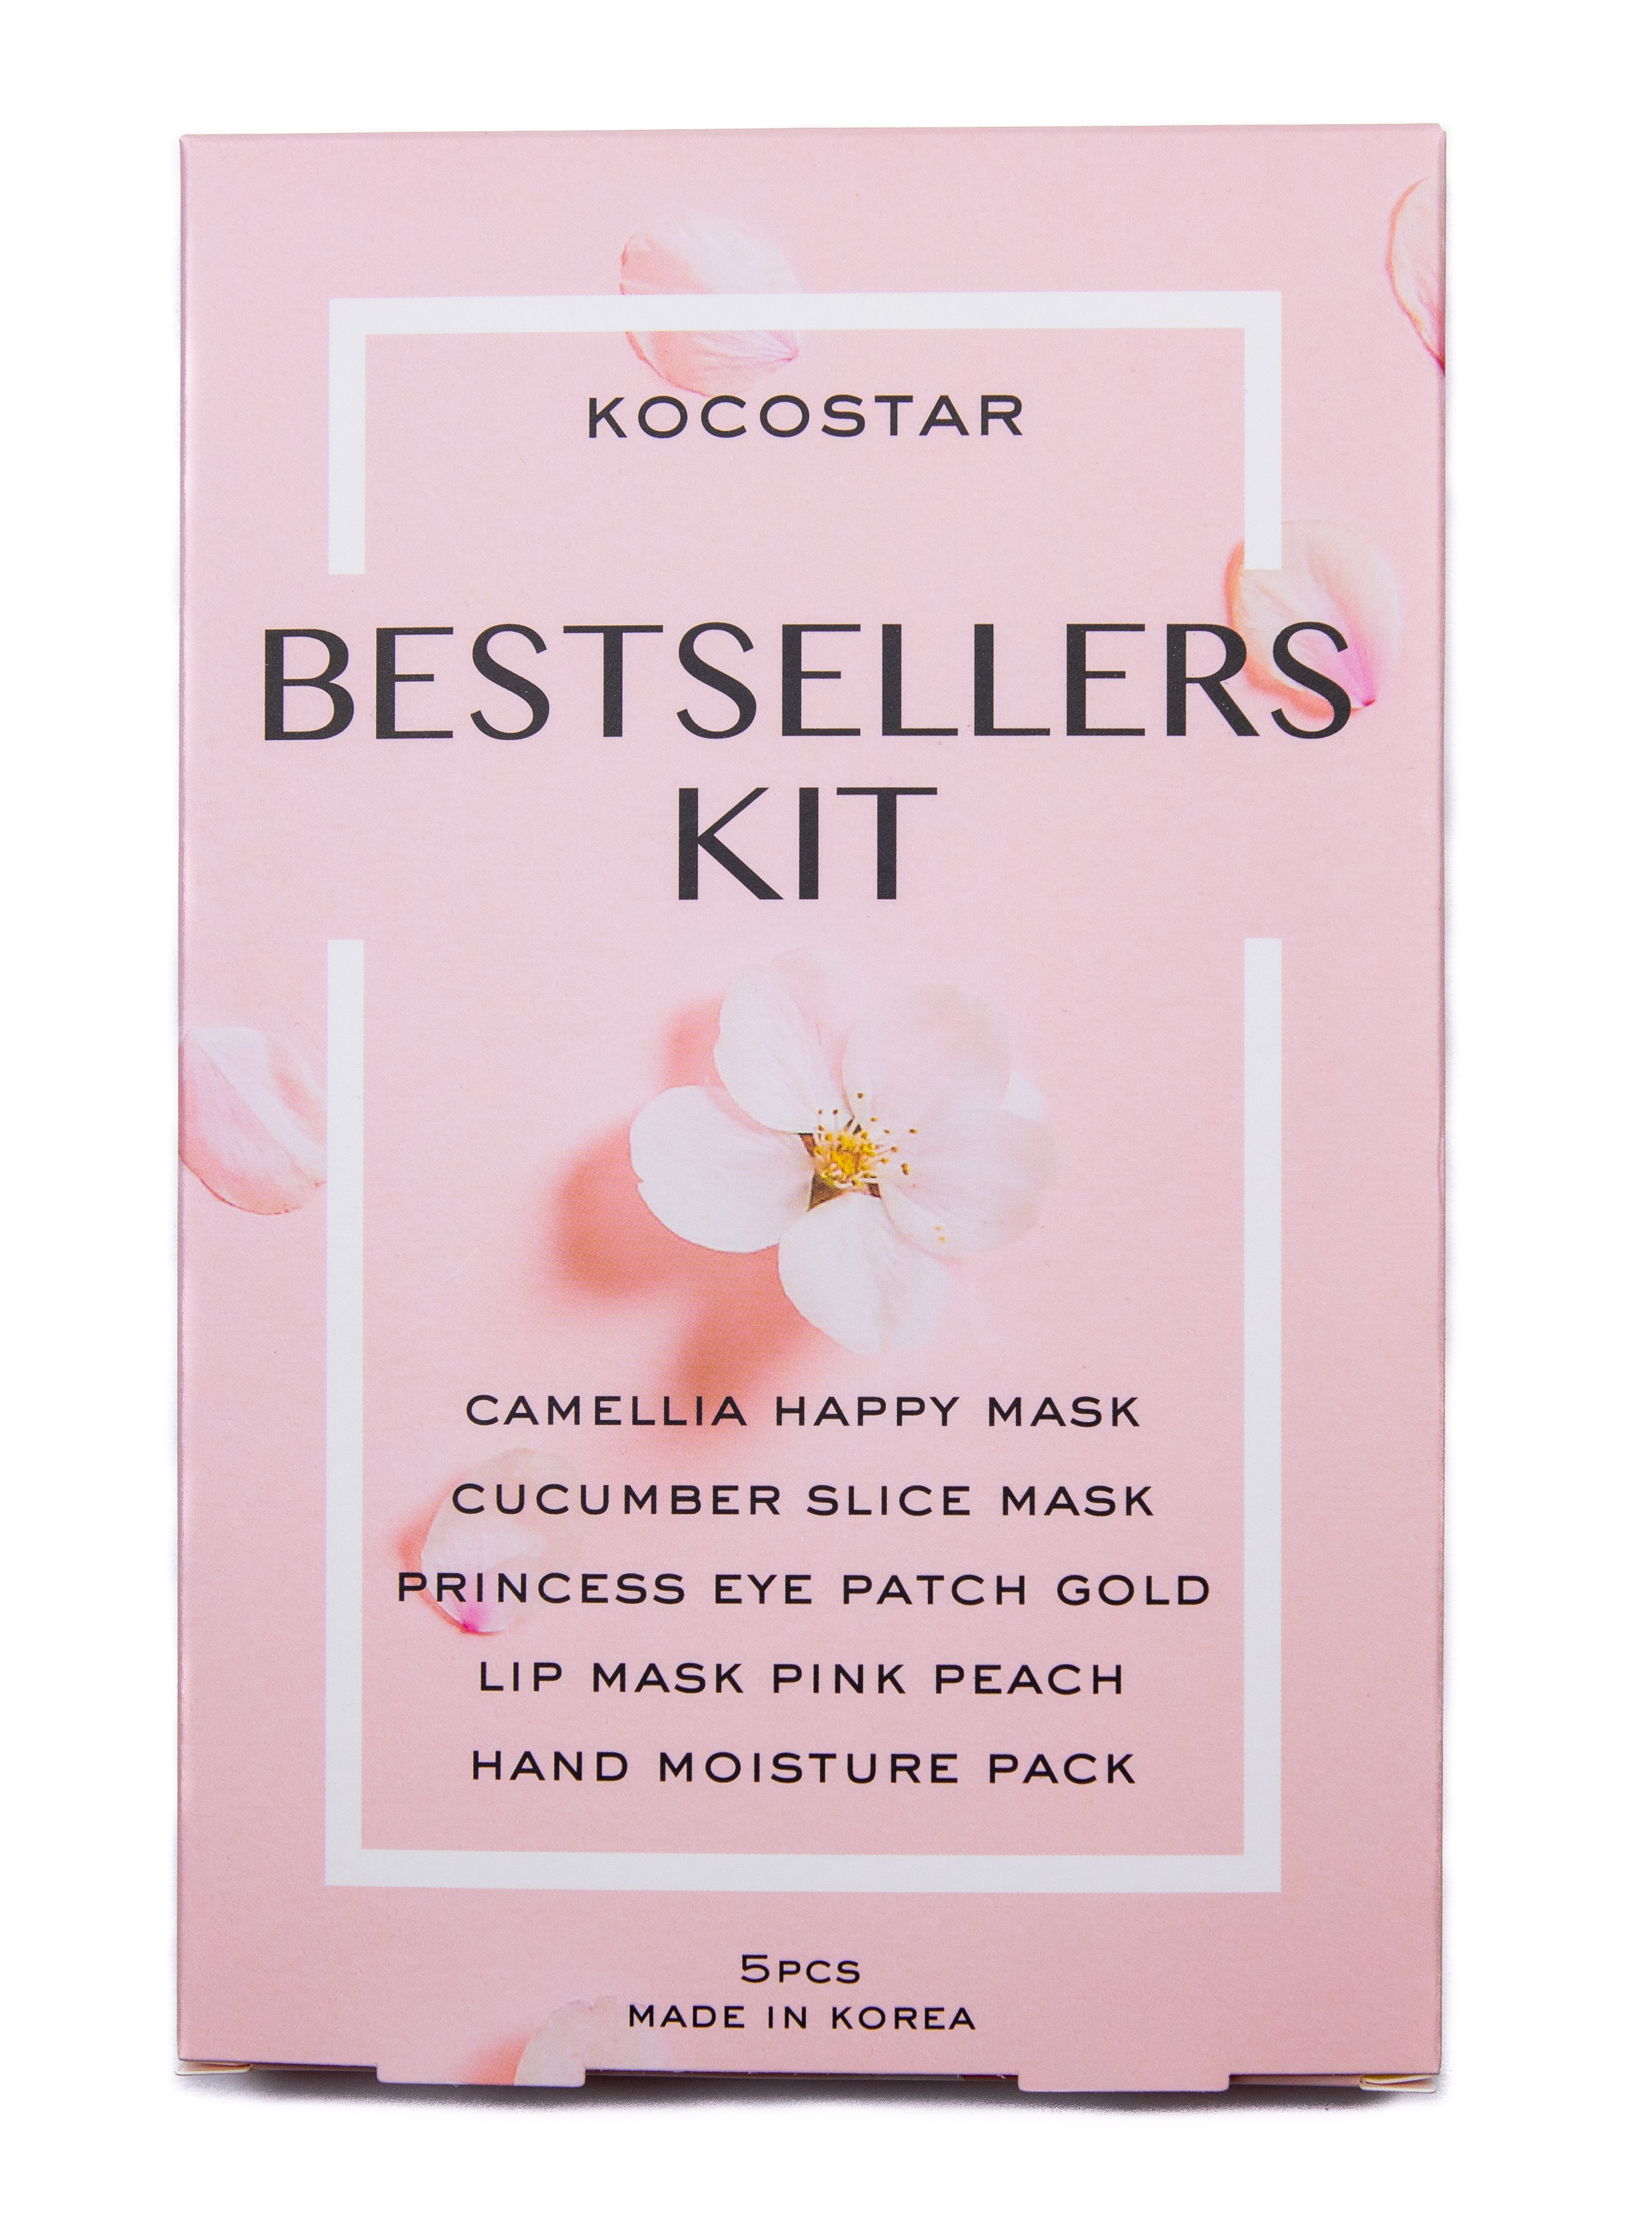 KOCOSTAR Bestseller Kit